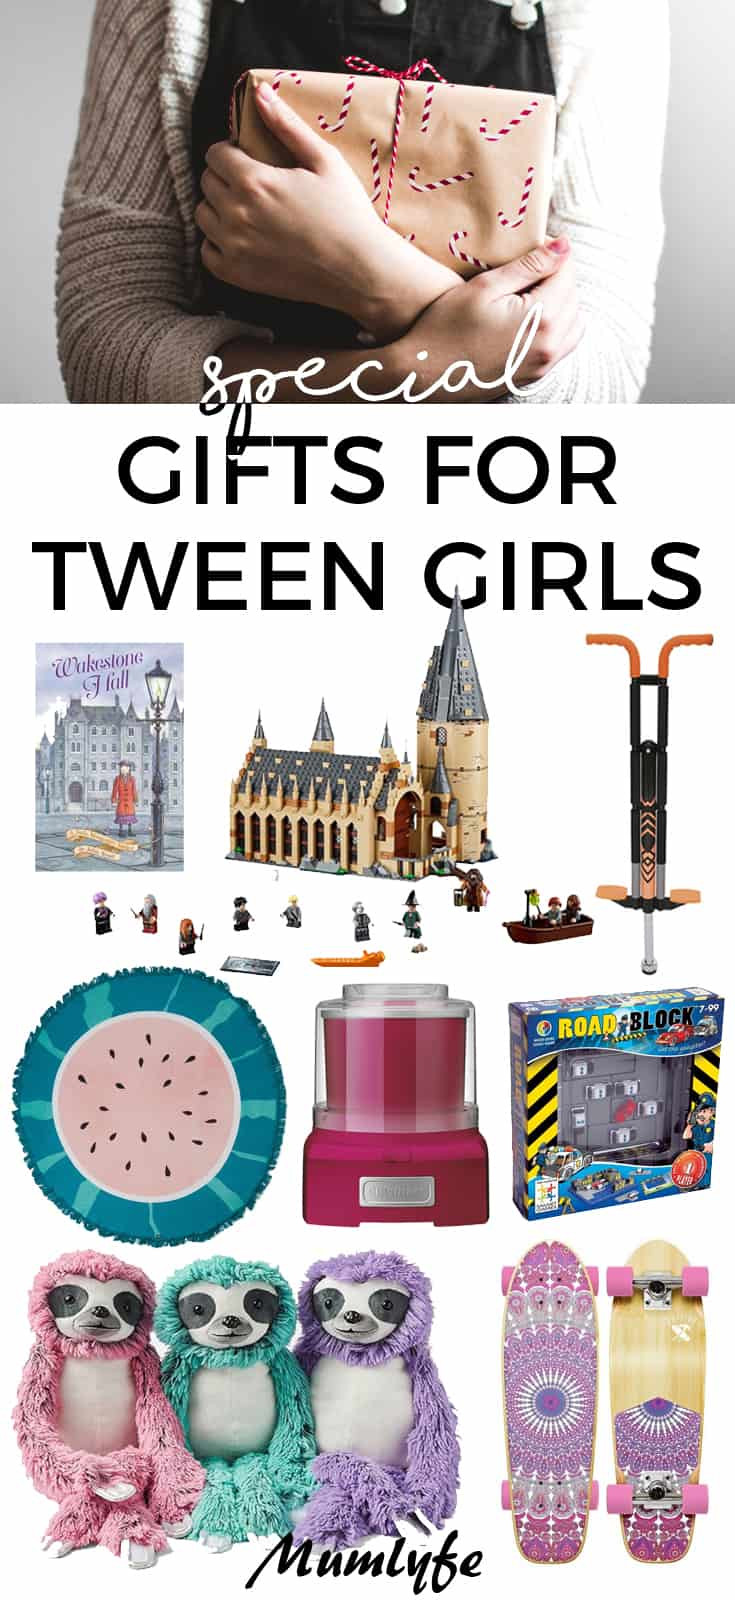 Tween Girls Christmas Gift Ideas
 24 Best Ideas Tween Girls Christmas Gift Ideas Home